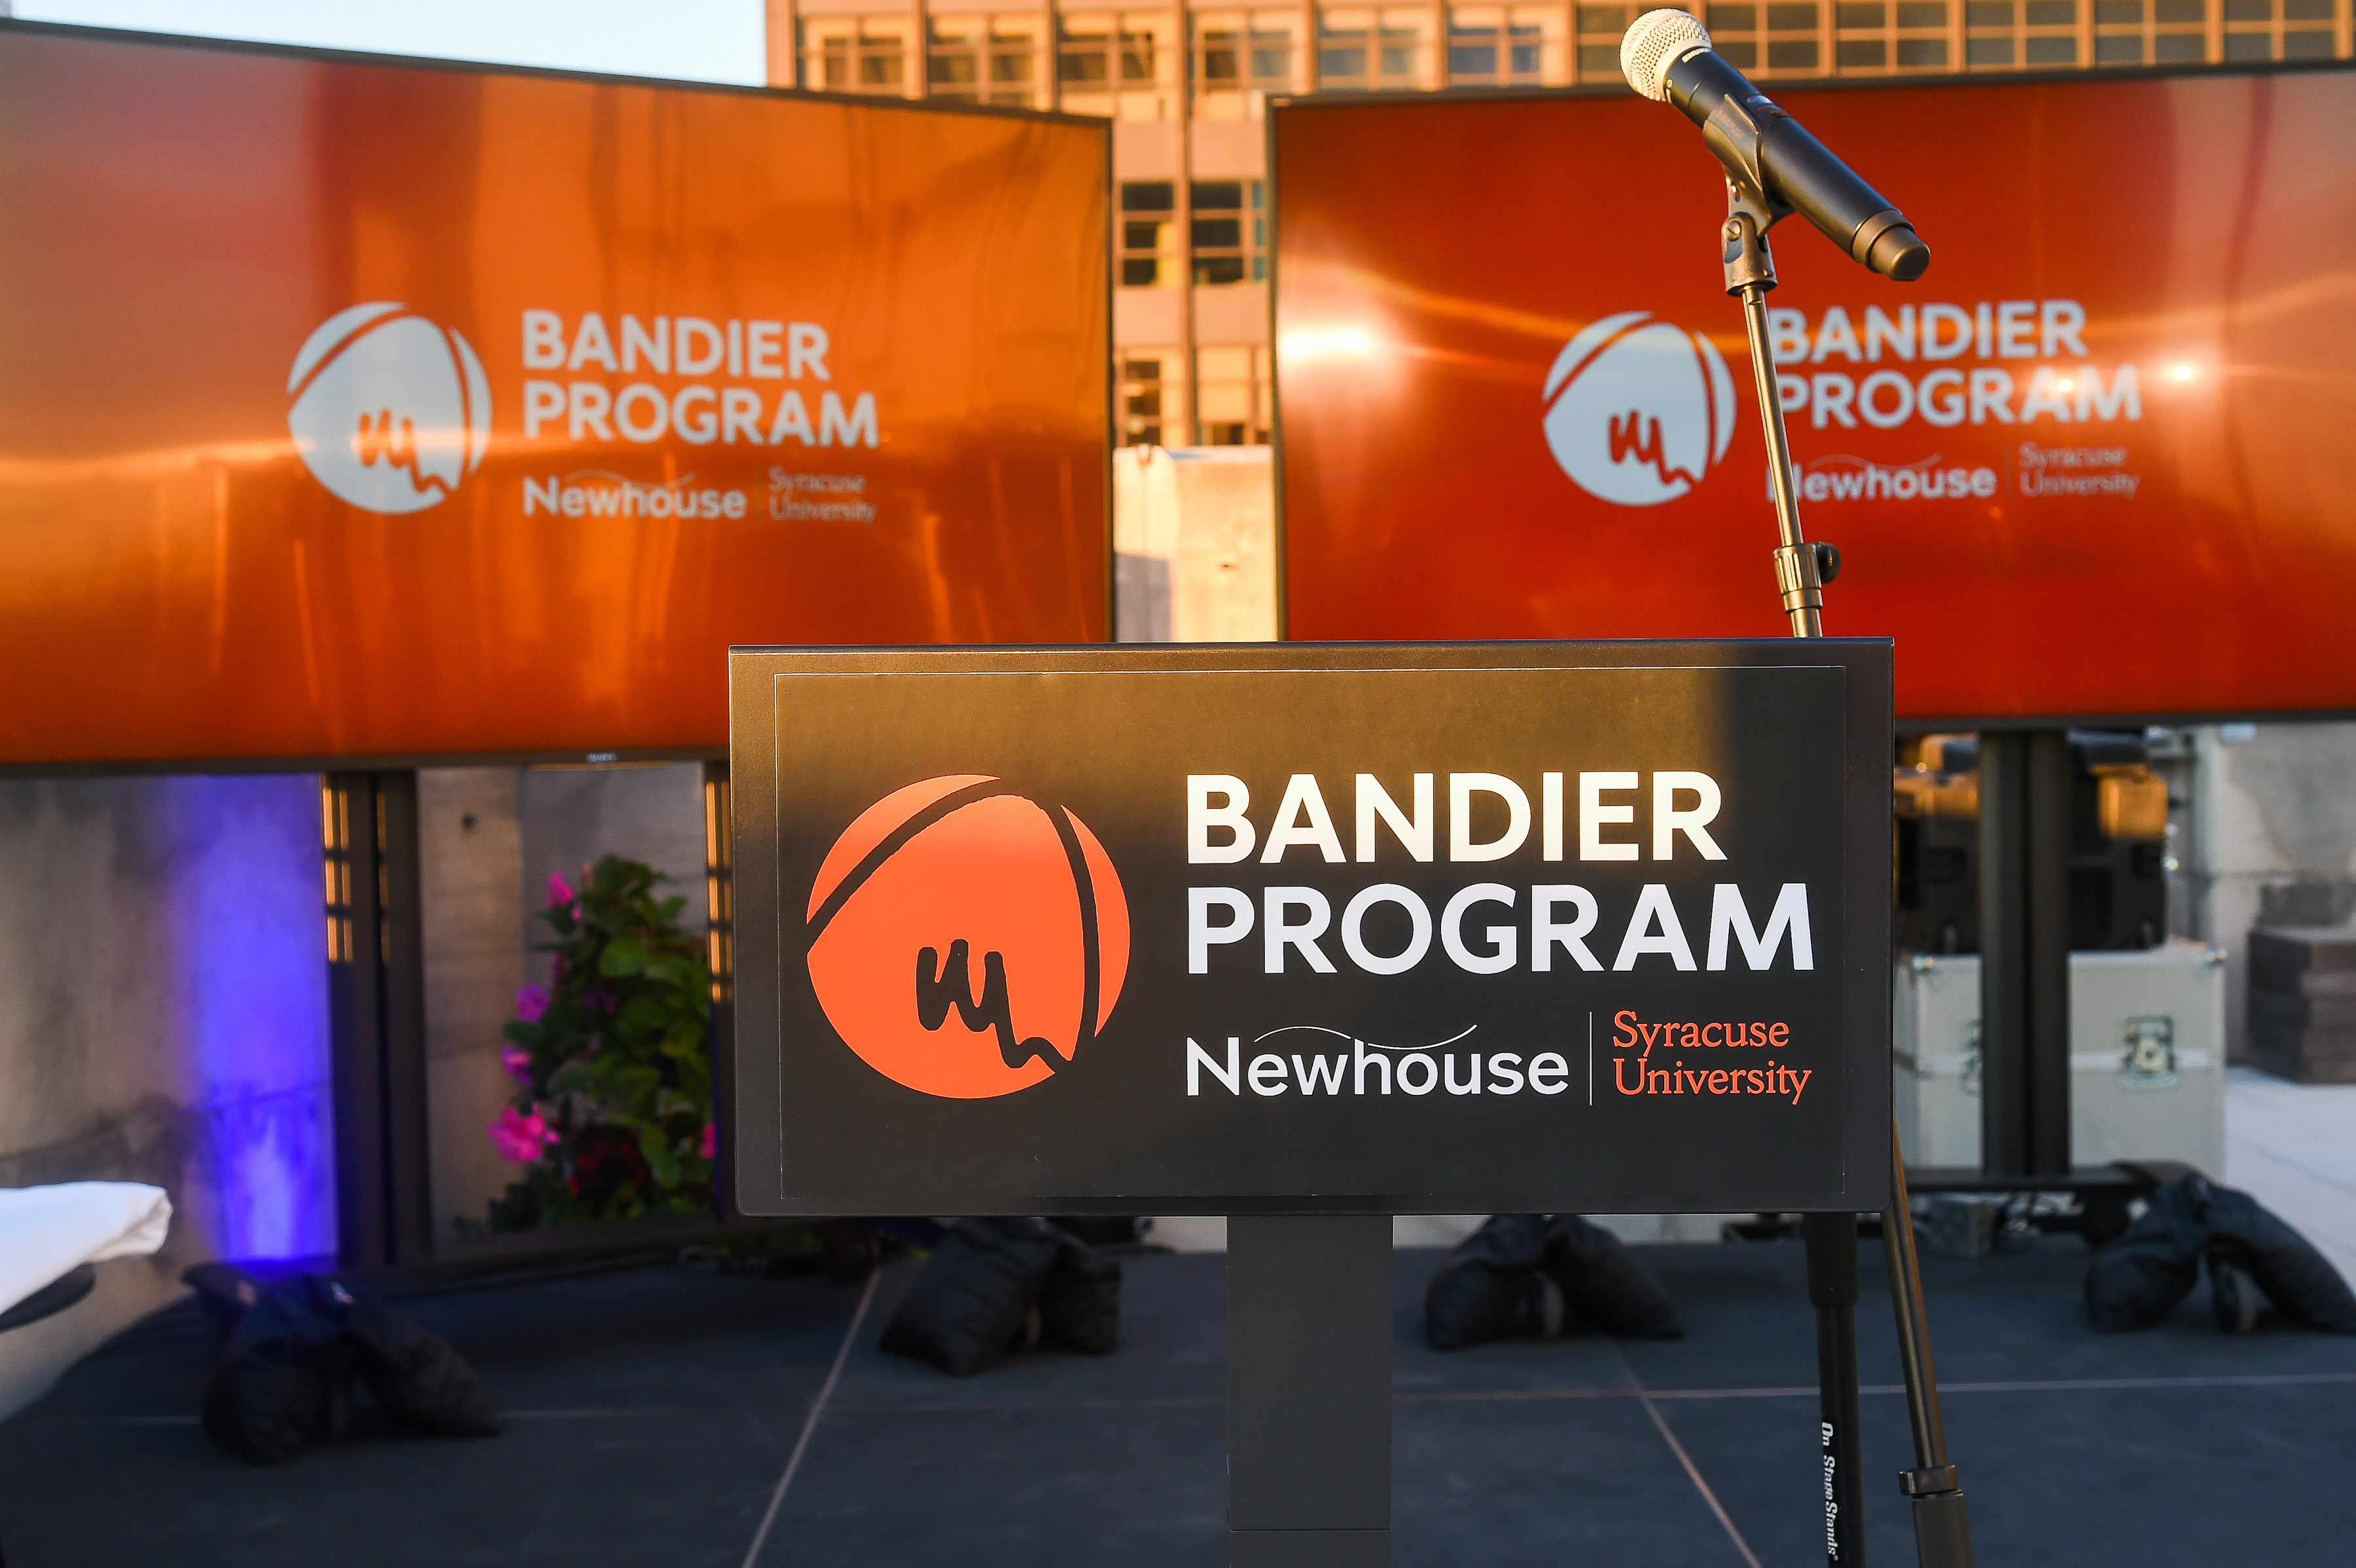 Bandier Program logo shown on three video monitors